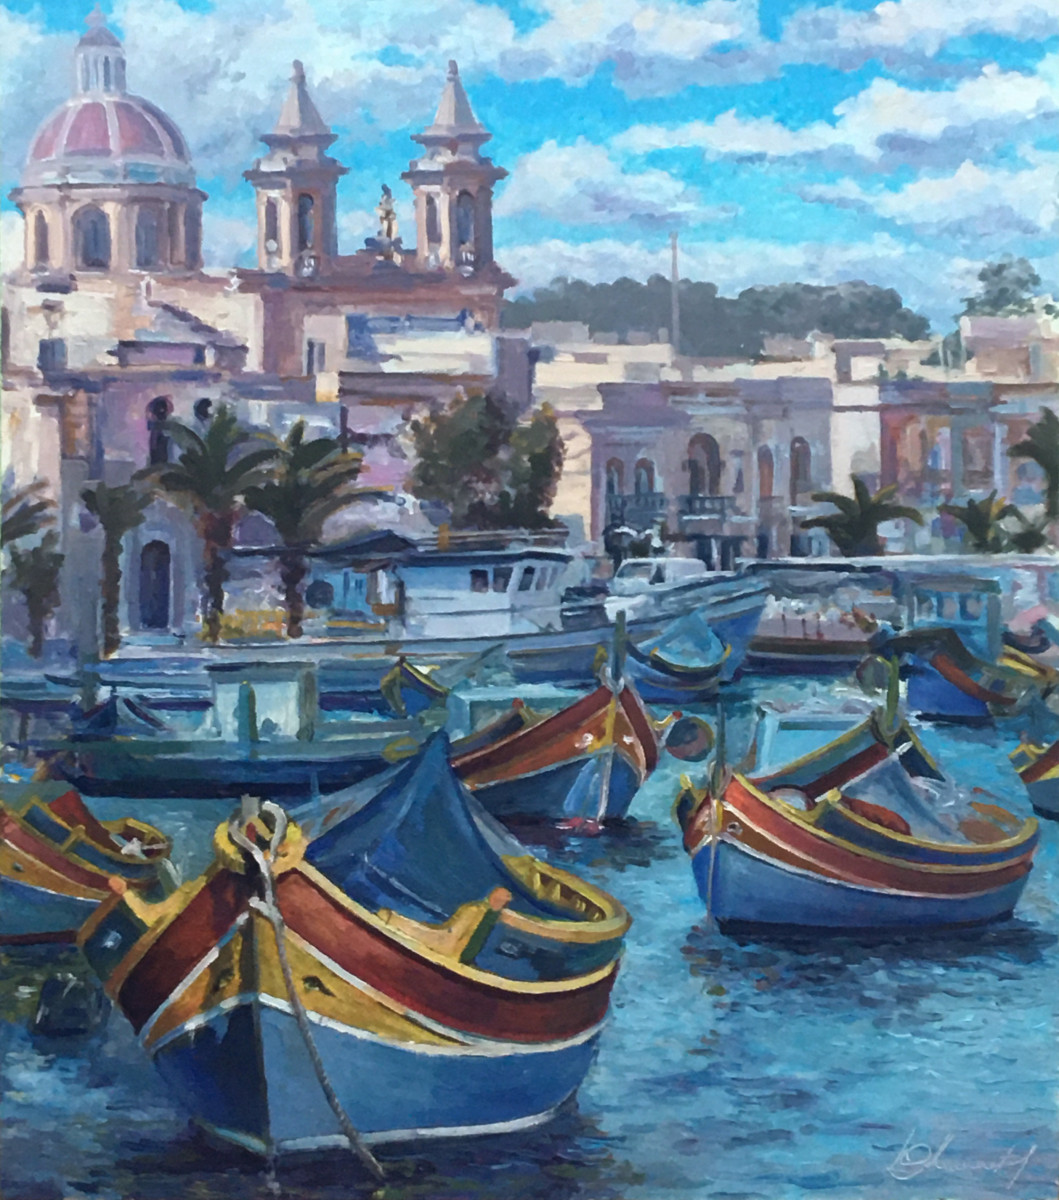 Продаю картину: автор Аксамитов Юрий, Malta, Marsaxlokk, страна цветных лодок - фотография